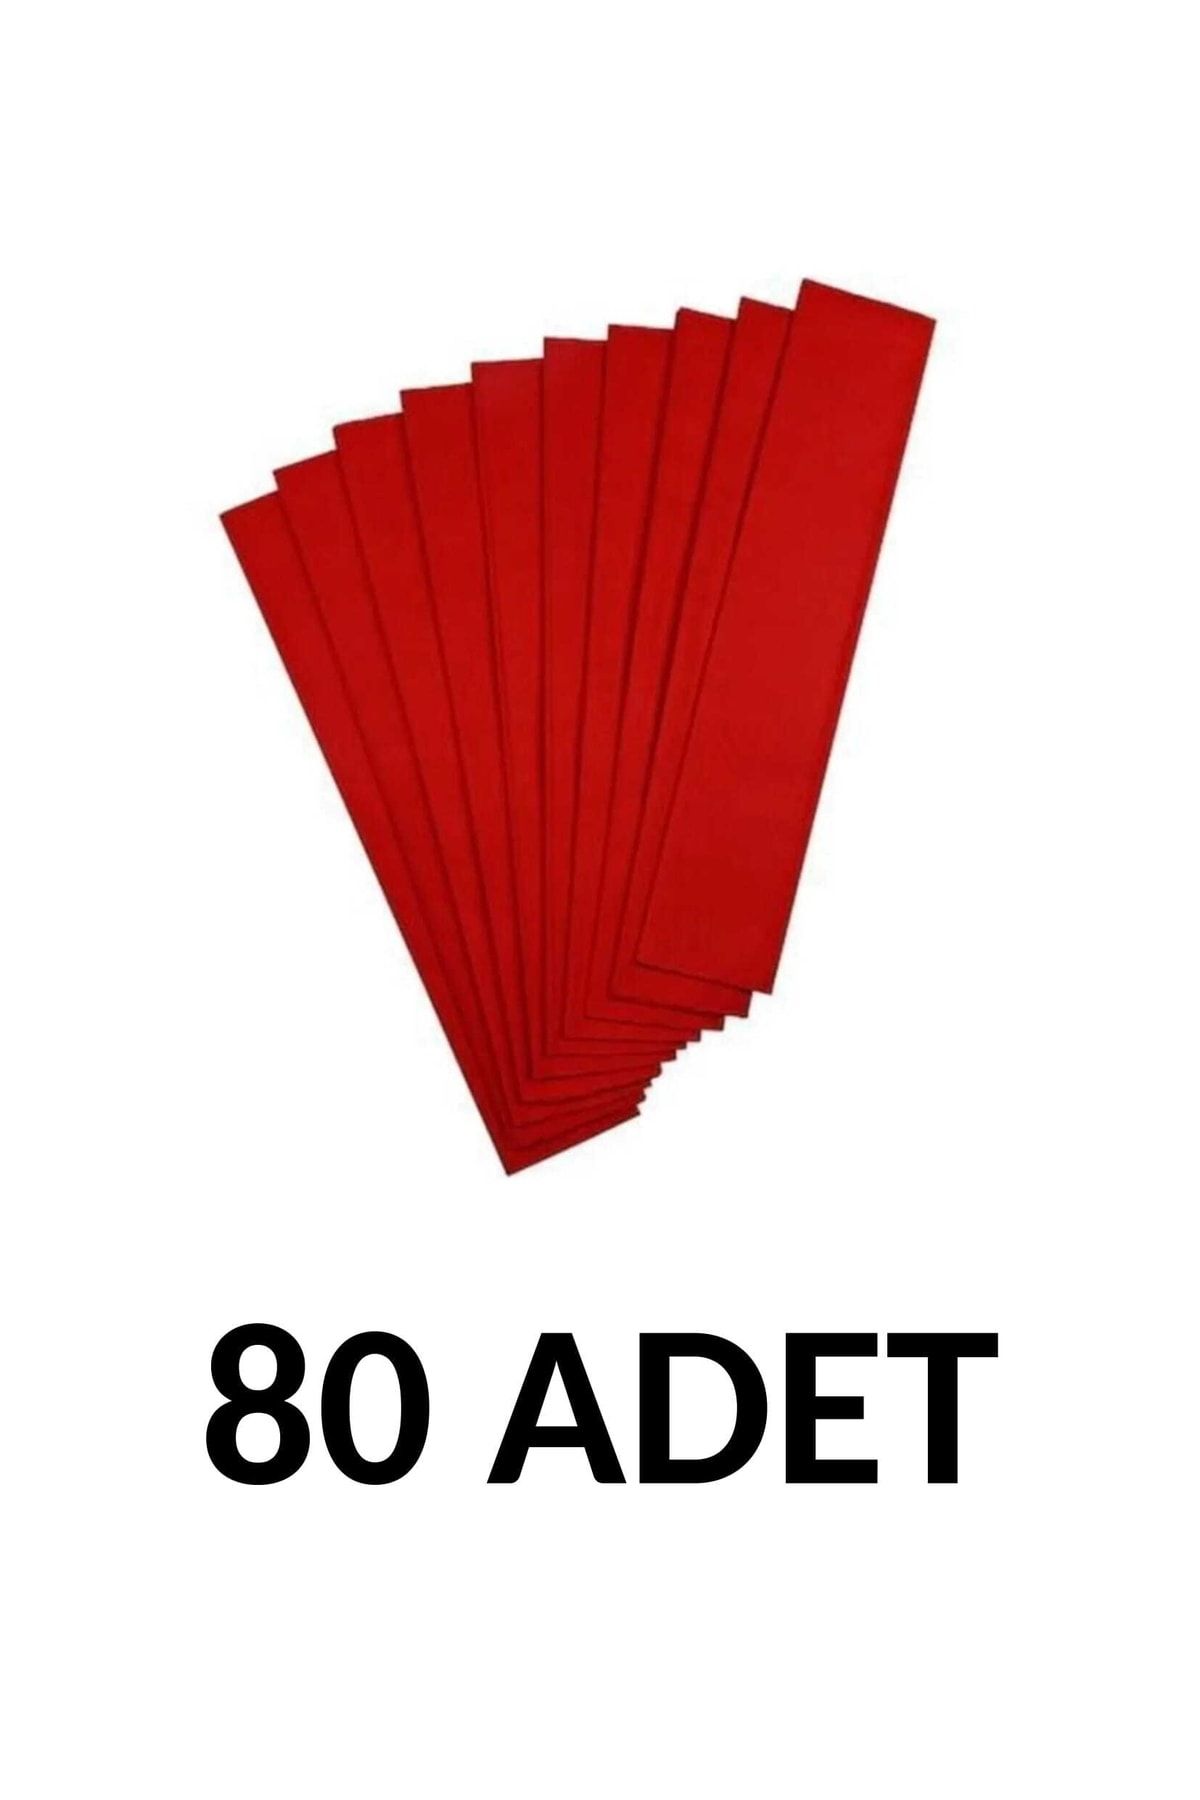 Ticon 80 Adet 50*200 Cm Kırmızı Renk Krapon Kağıdı